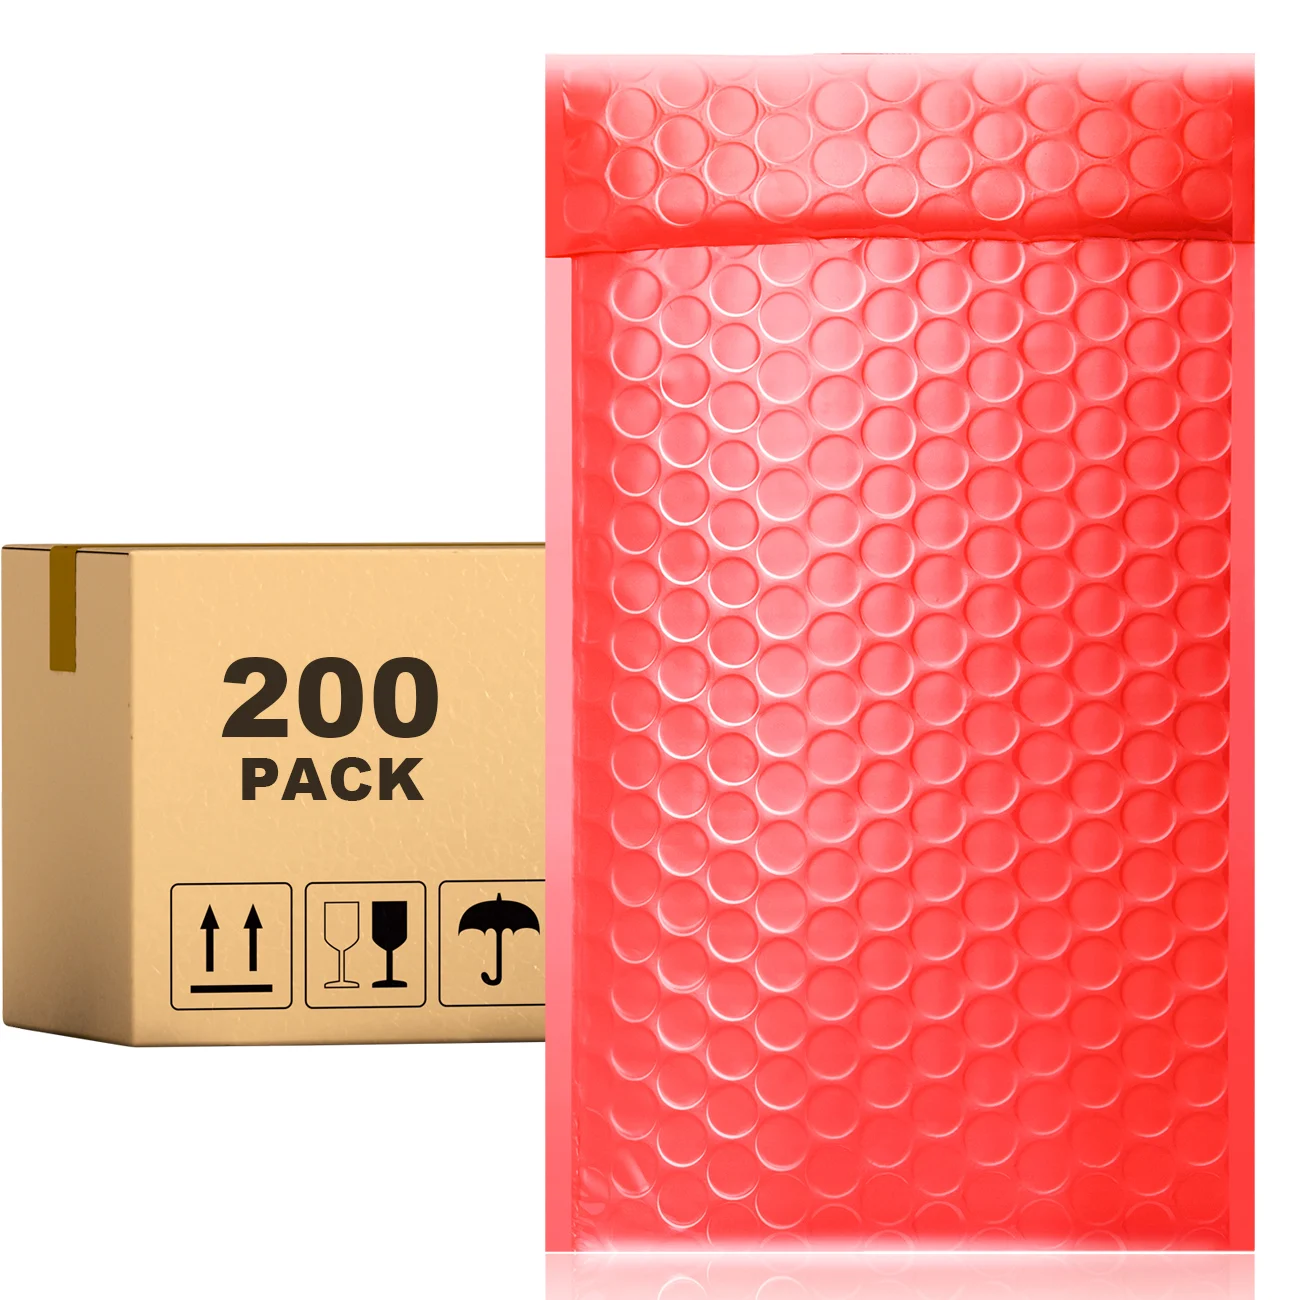 

Конверты PACKAPRO с полиэтиленовыми пузырьками, 7x10, красные мягкие конверты, 200 шт. для упаковки, отправки, доставки